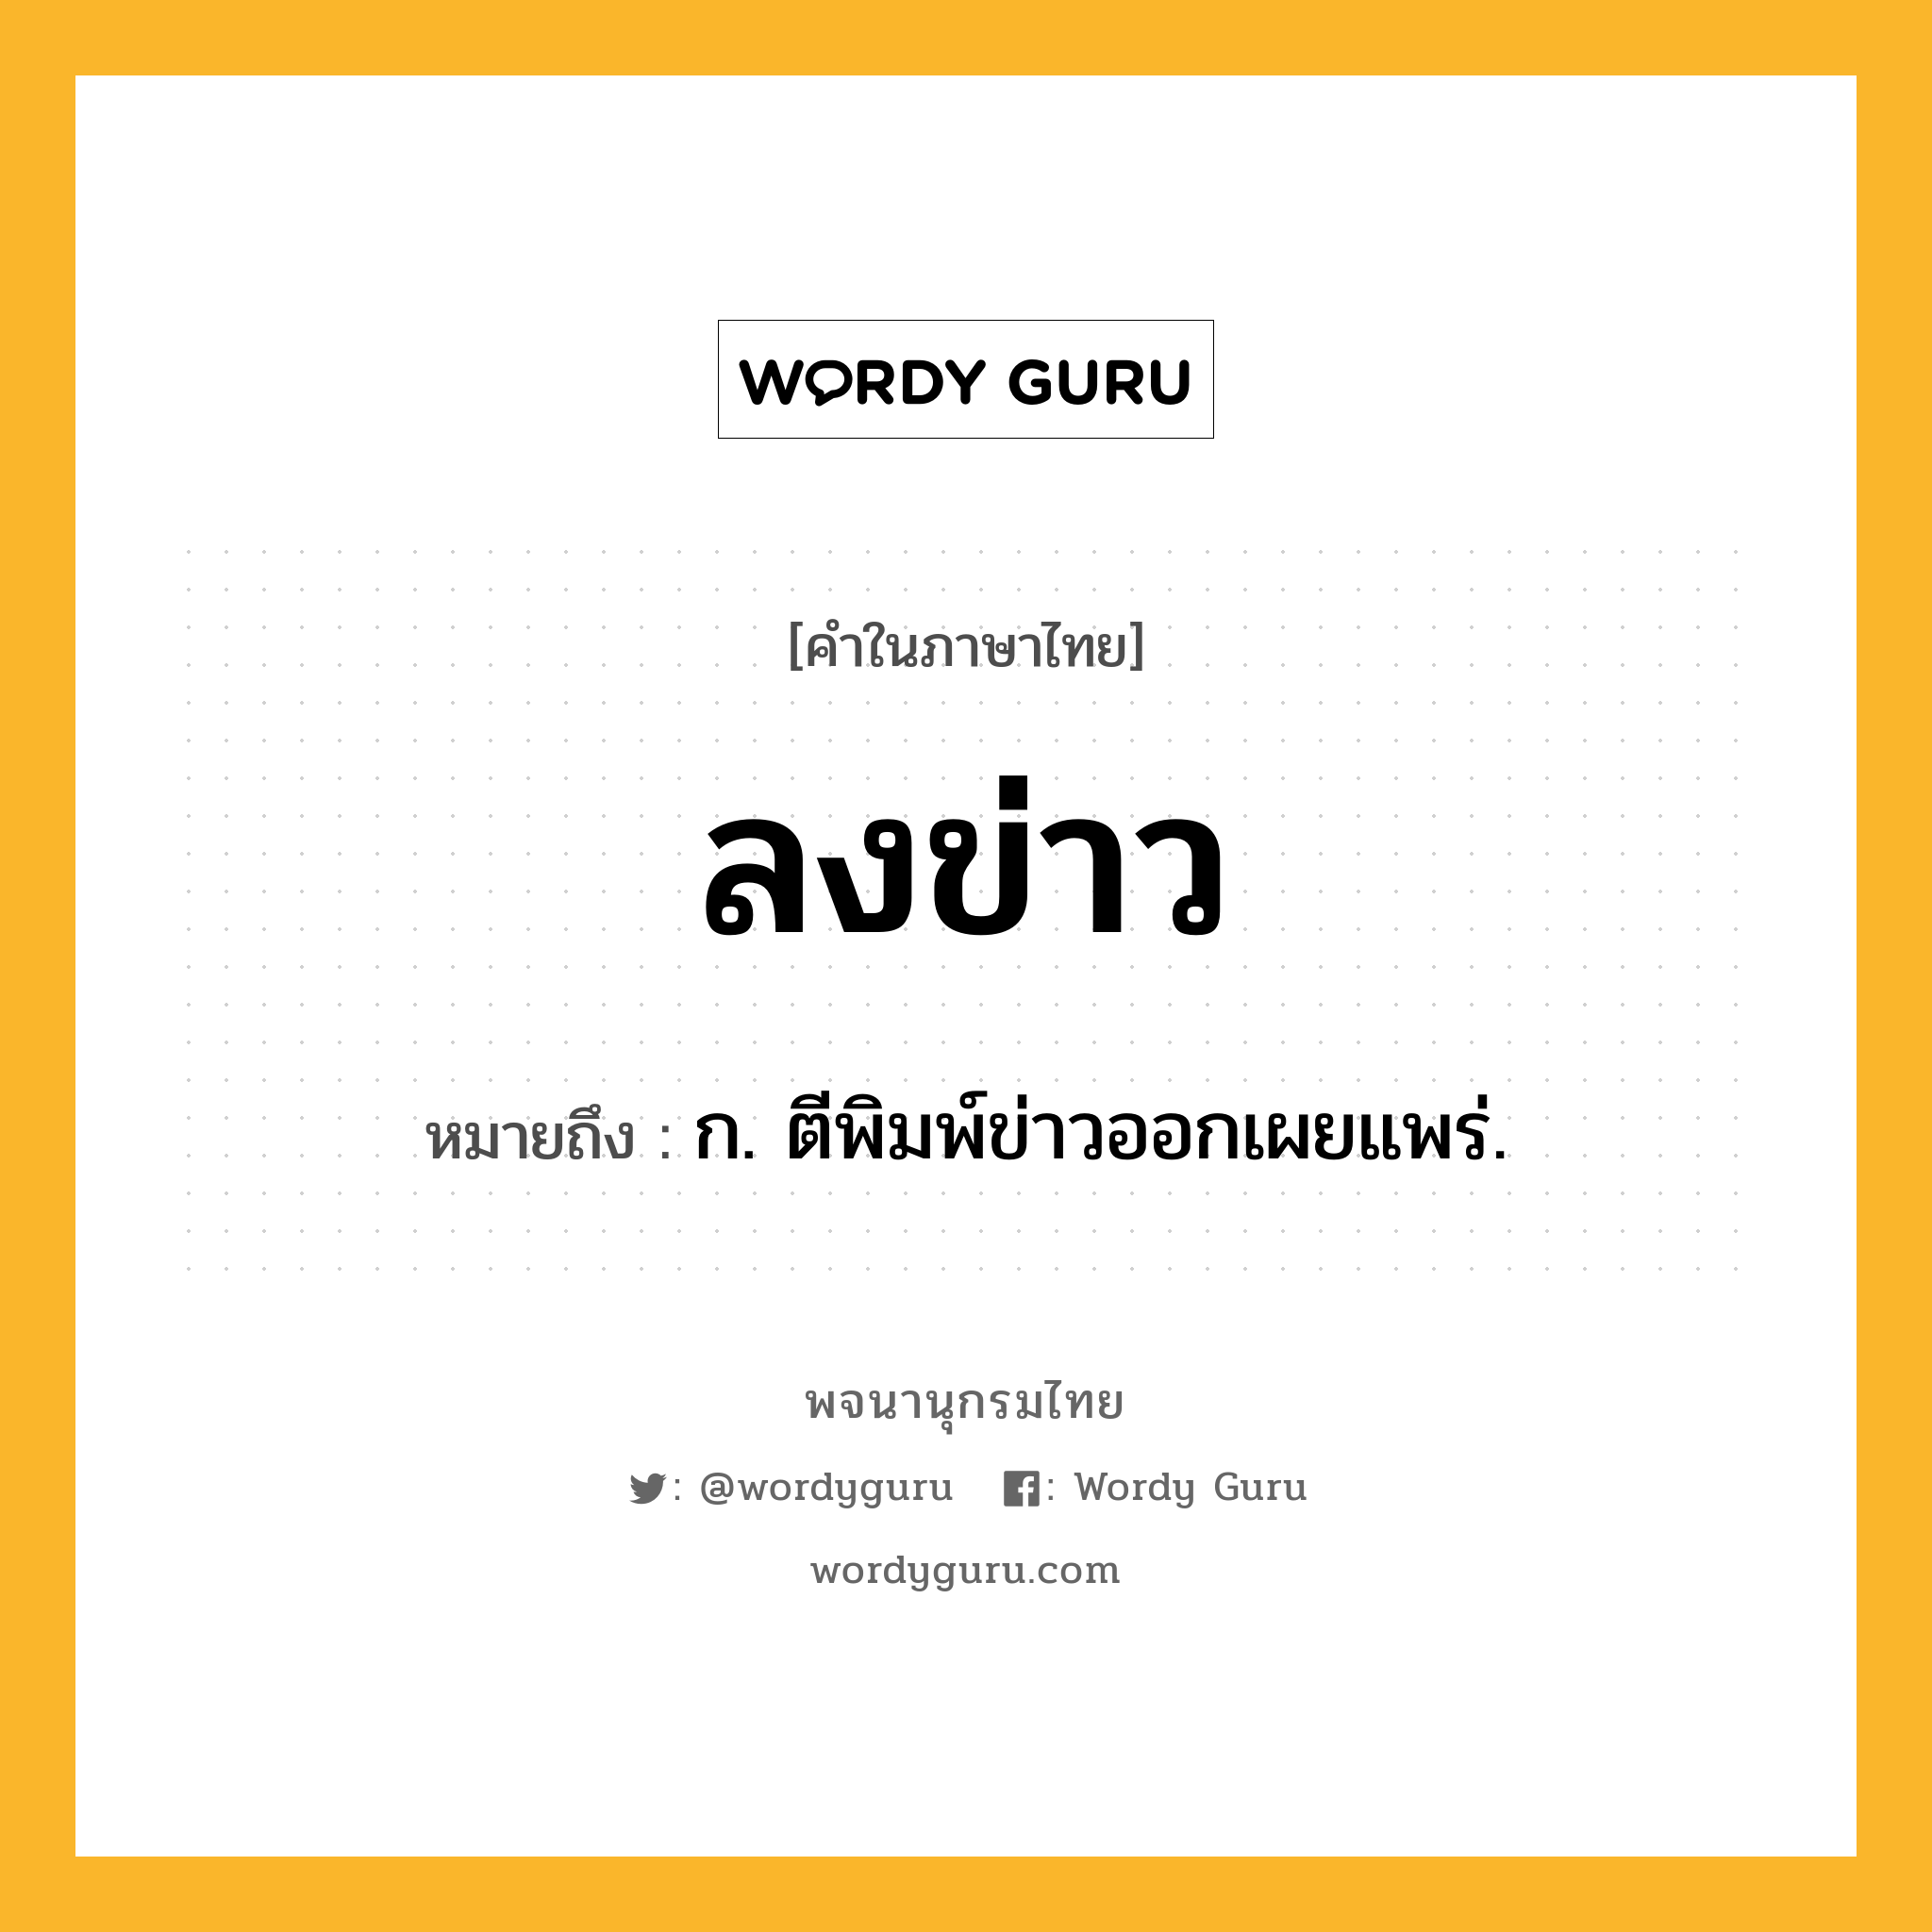 ลงข่าว ความหมาย หมายถึงอะไร?, คำในภาษาไทย ลงข่าว หมายถึง ก. ตีพิมพ์ข่าวออกเผยแพร่.